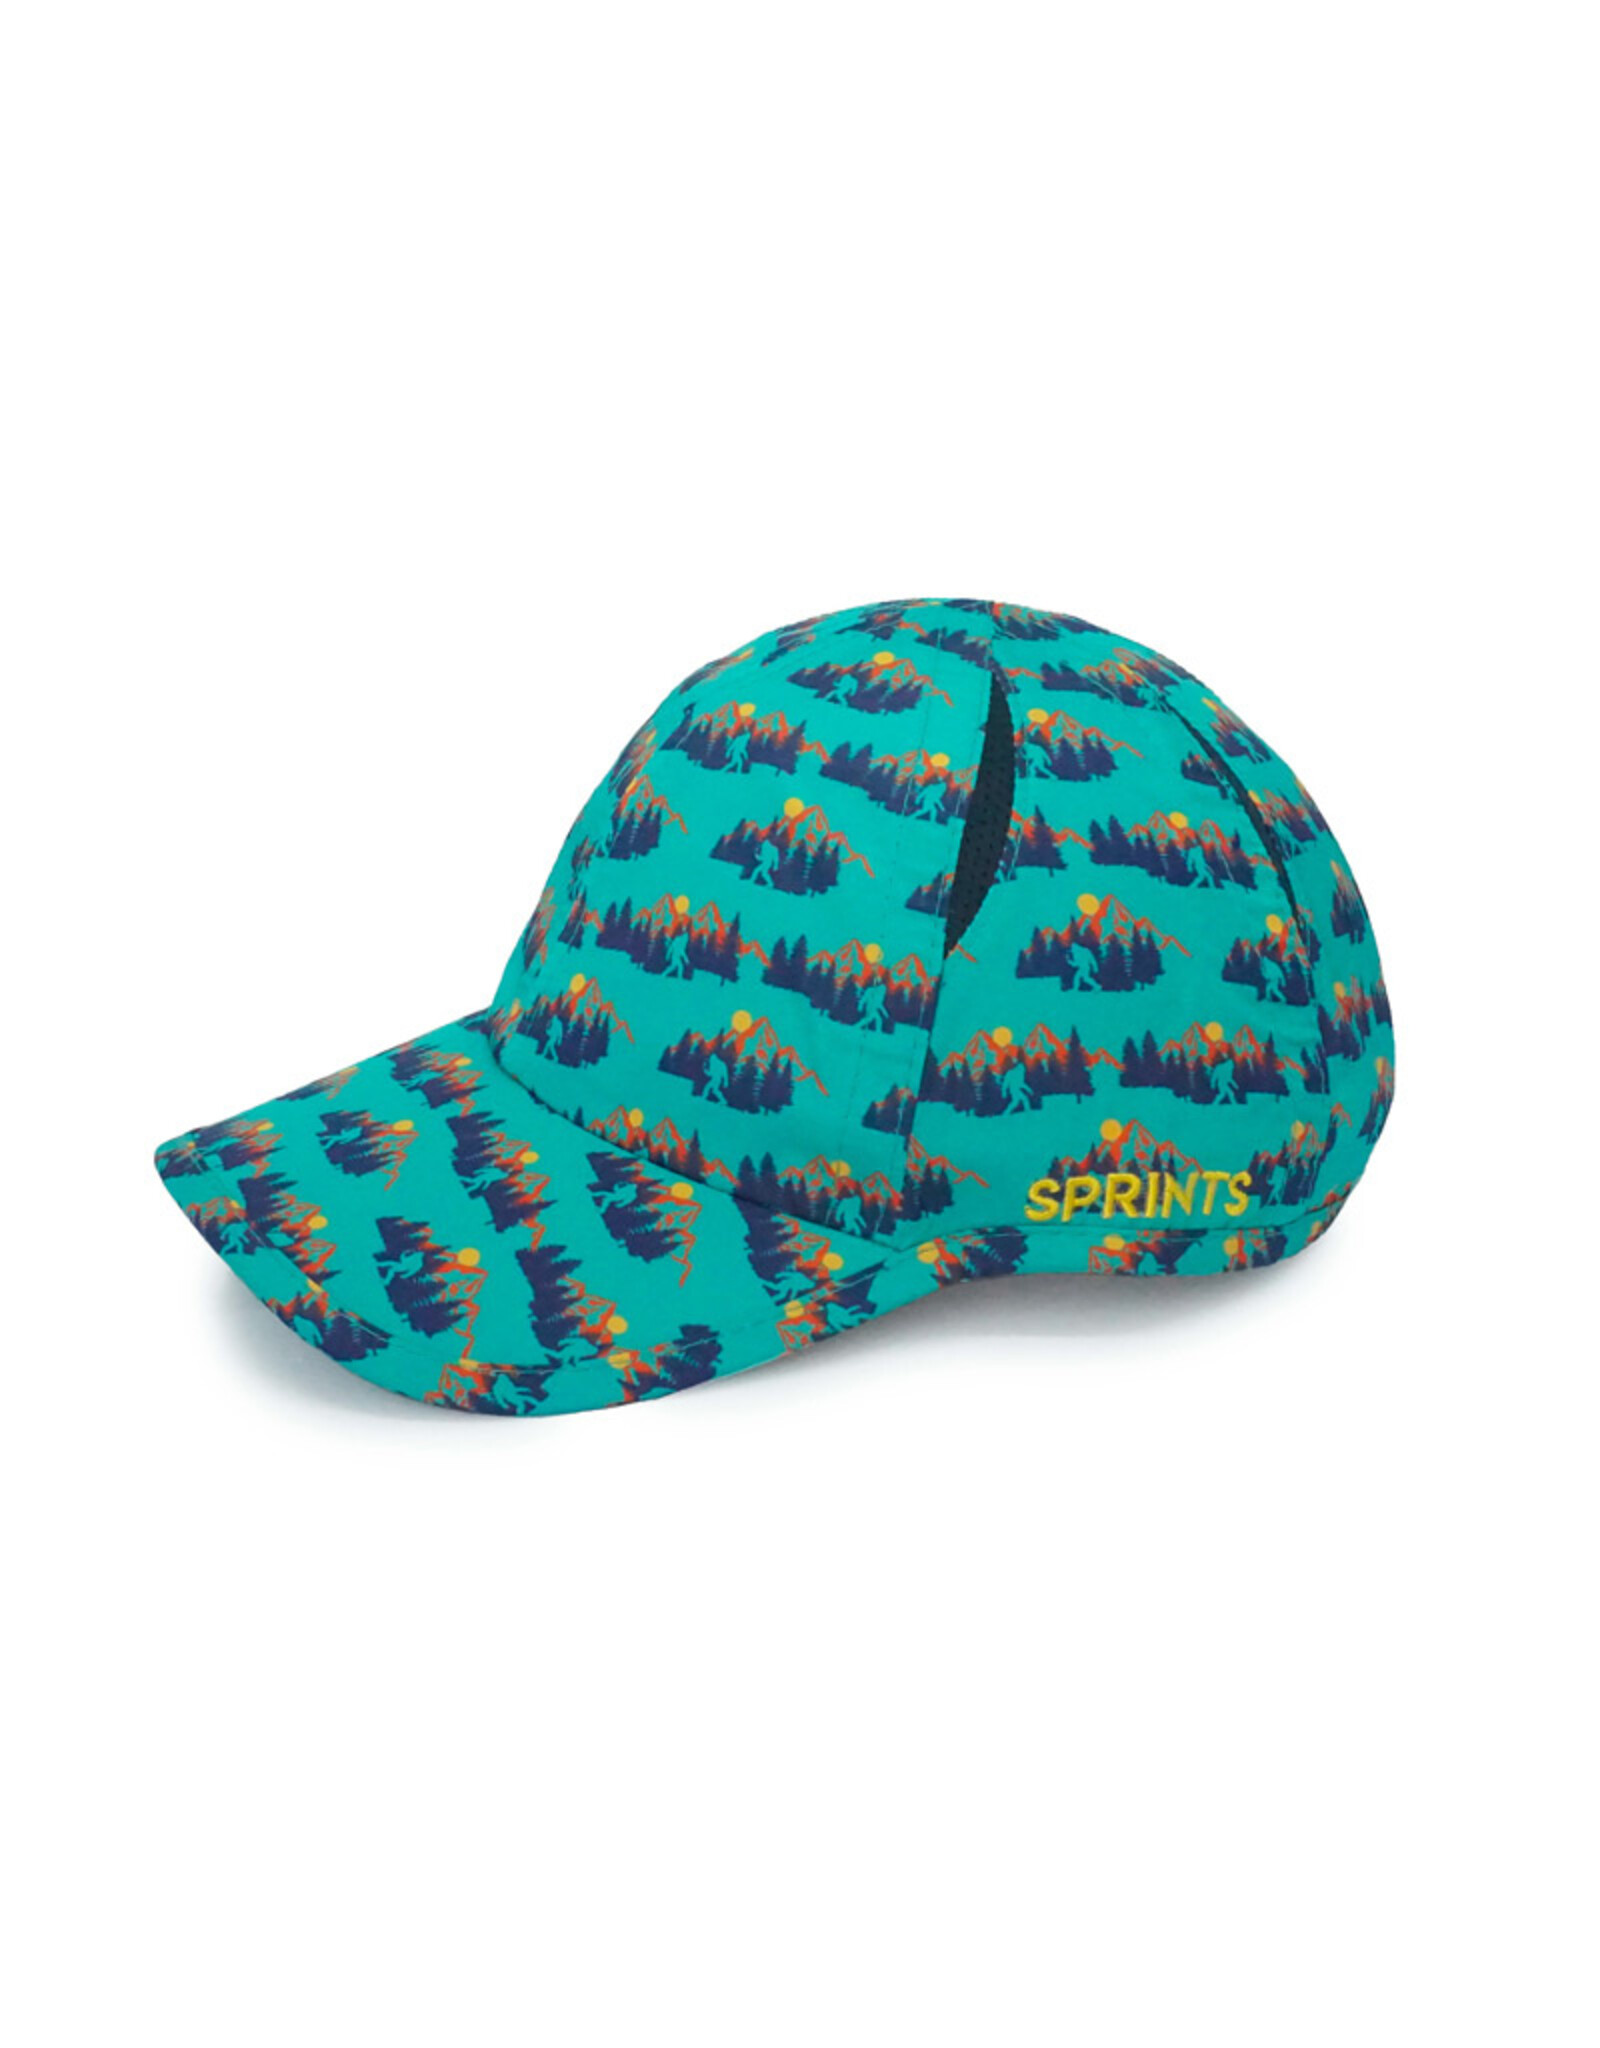 Sprints Sasquatch Hat